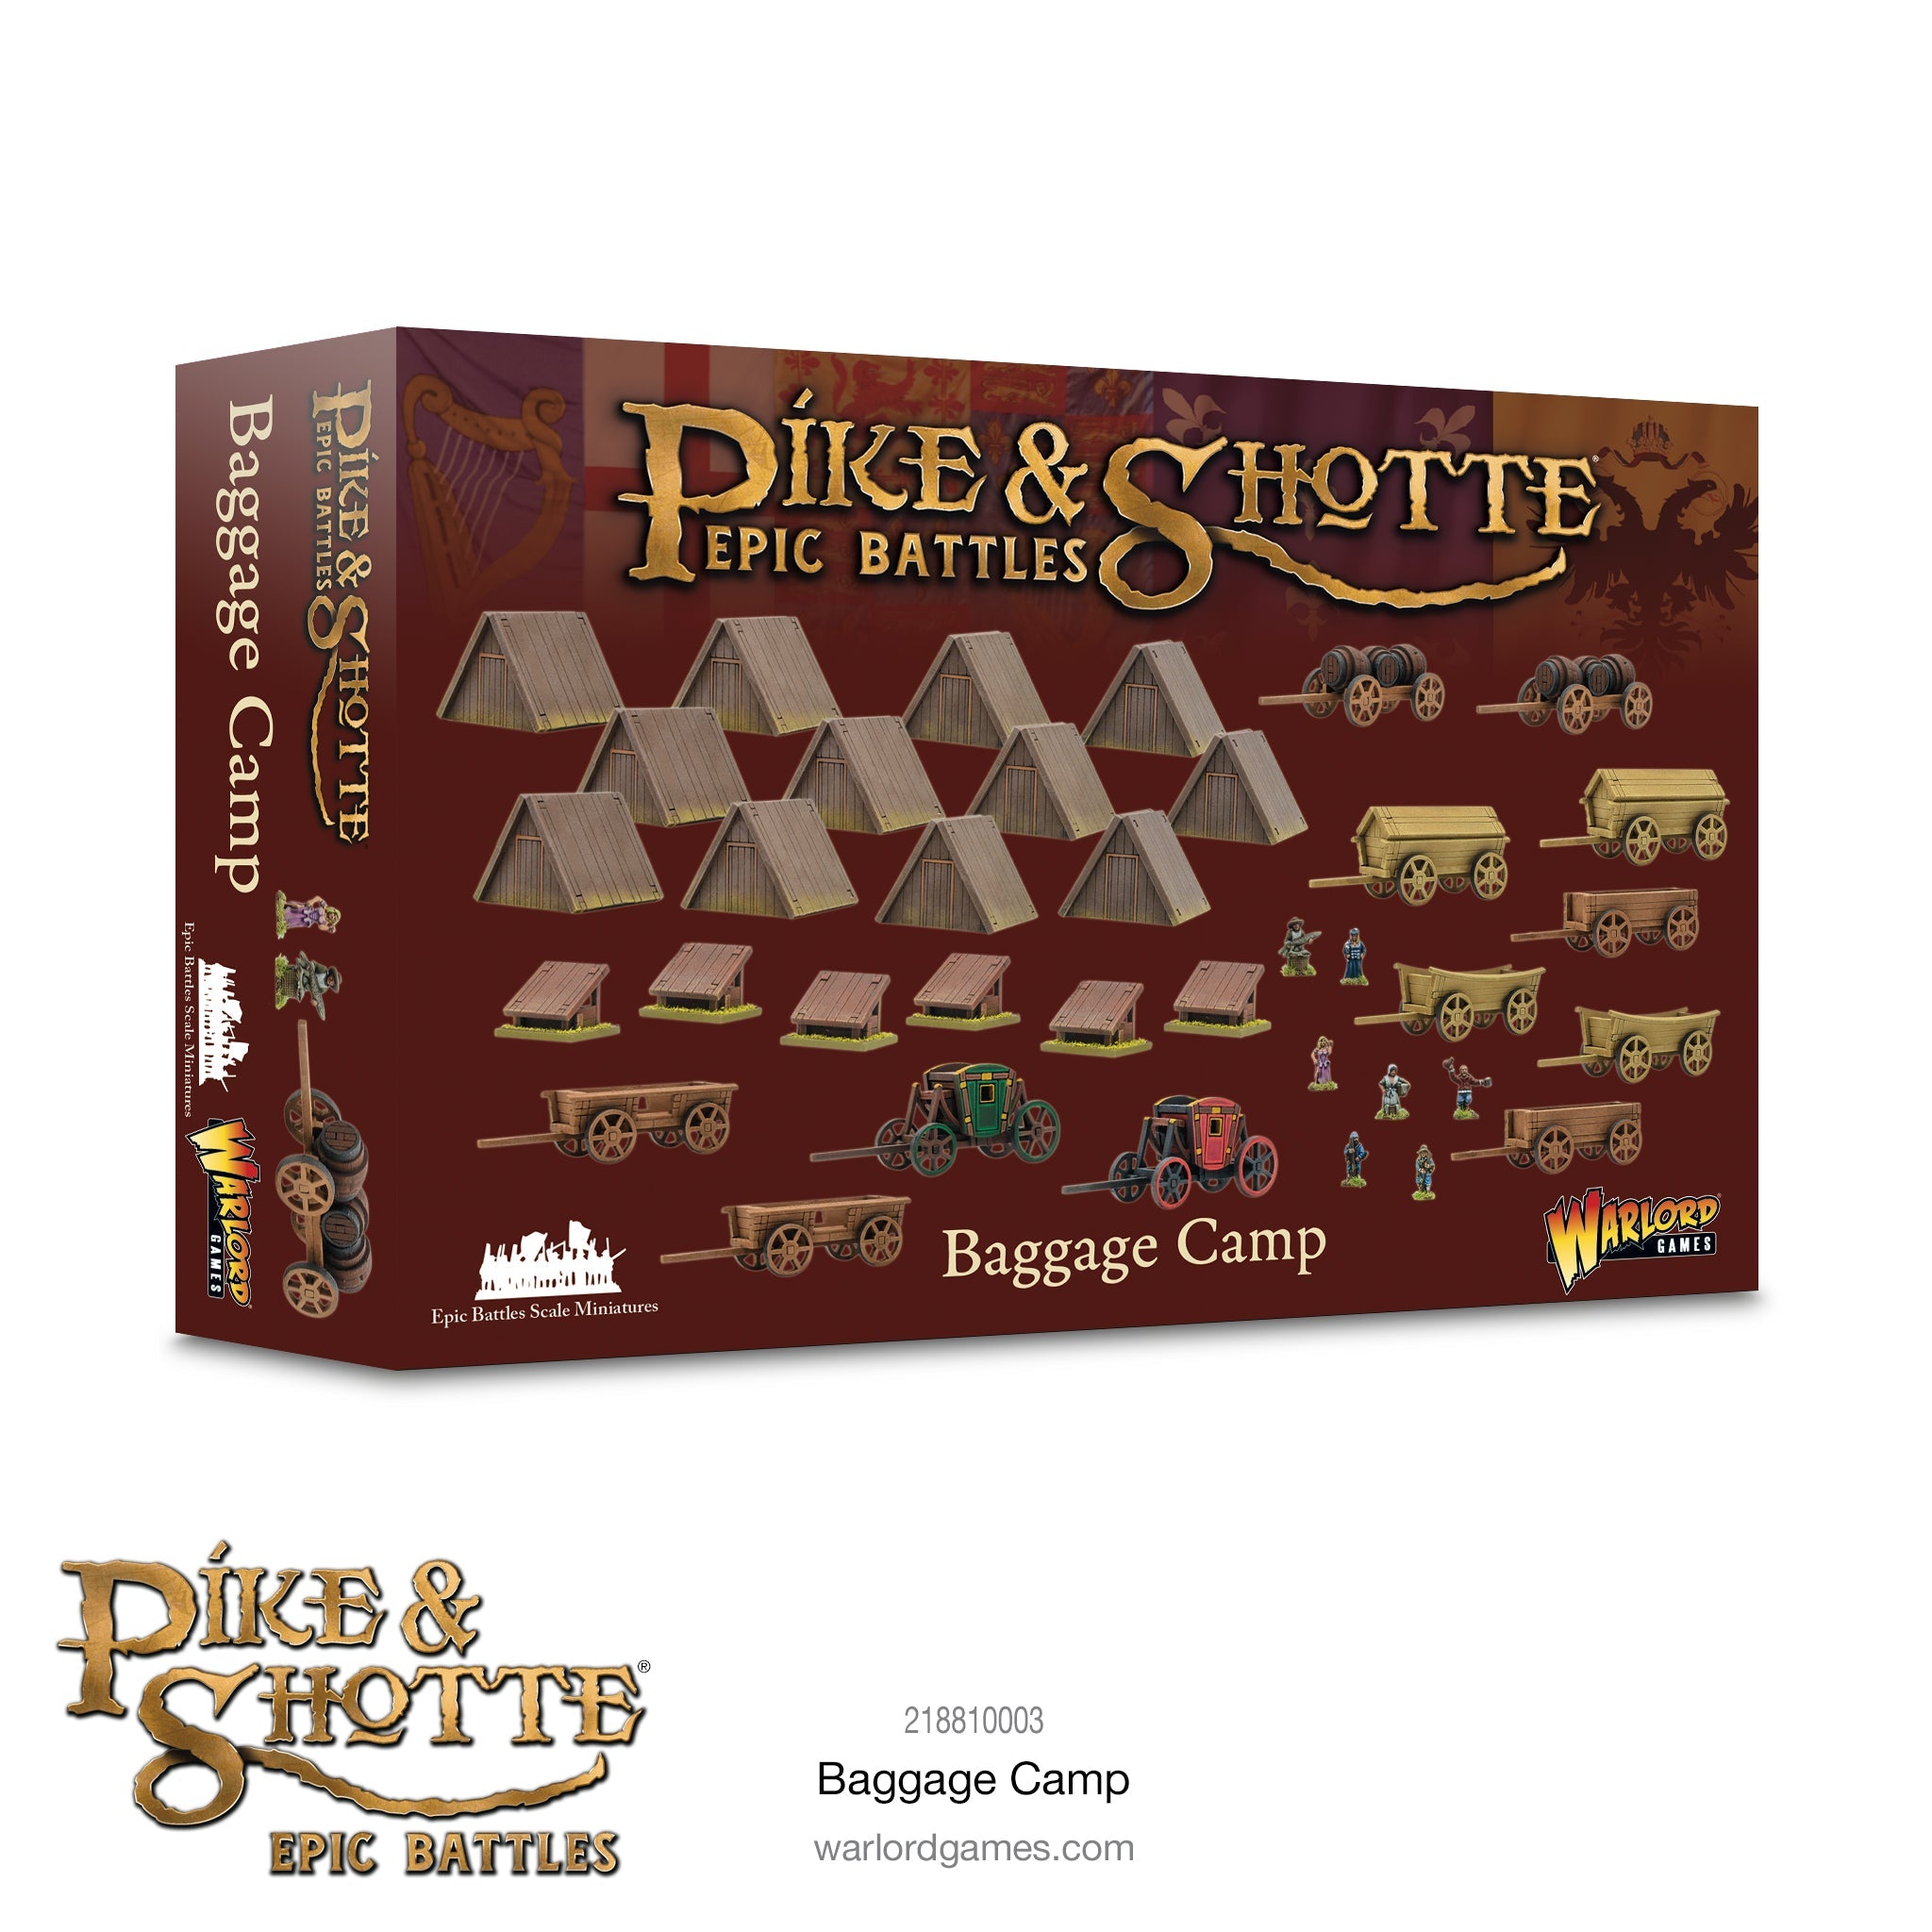 Pike & Shotte Epic Battles: Baggage Camp